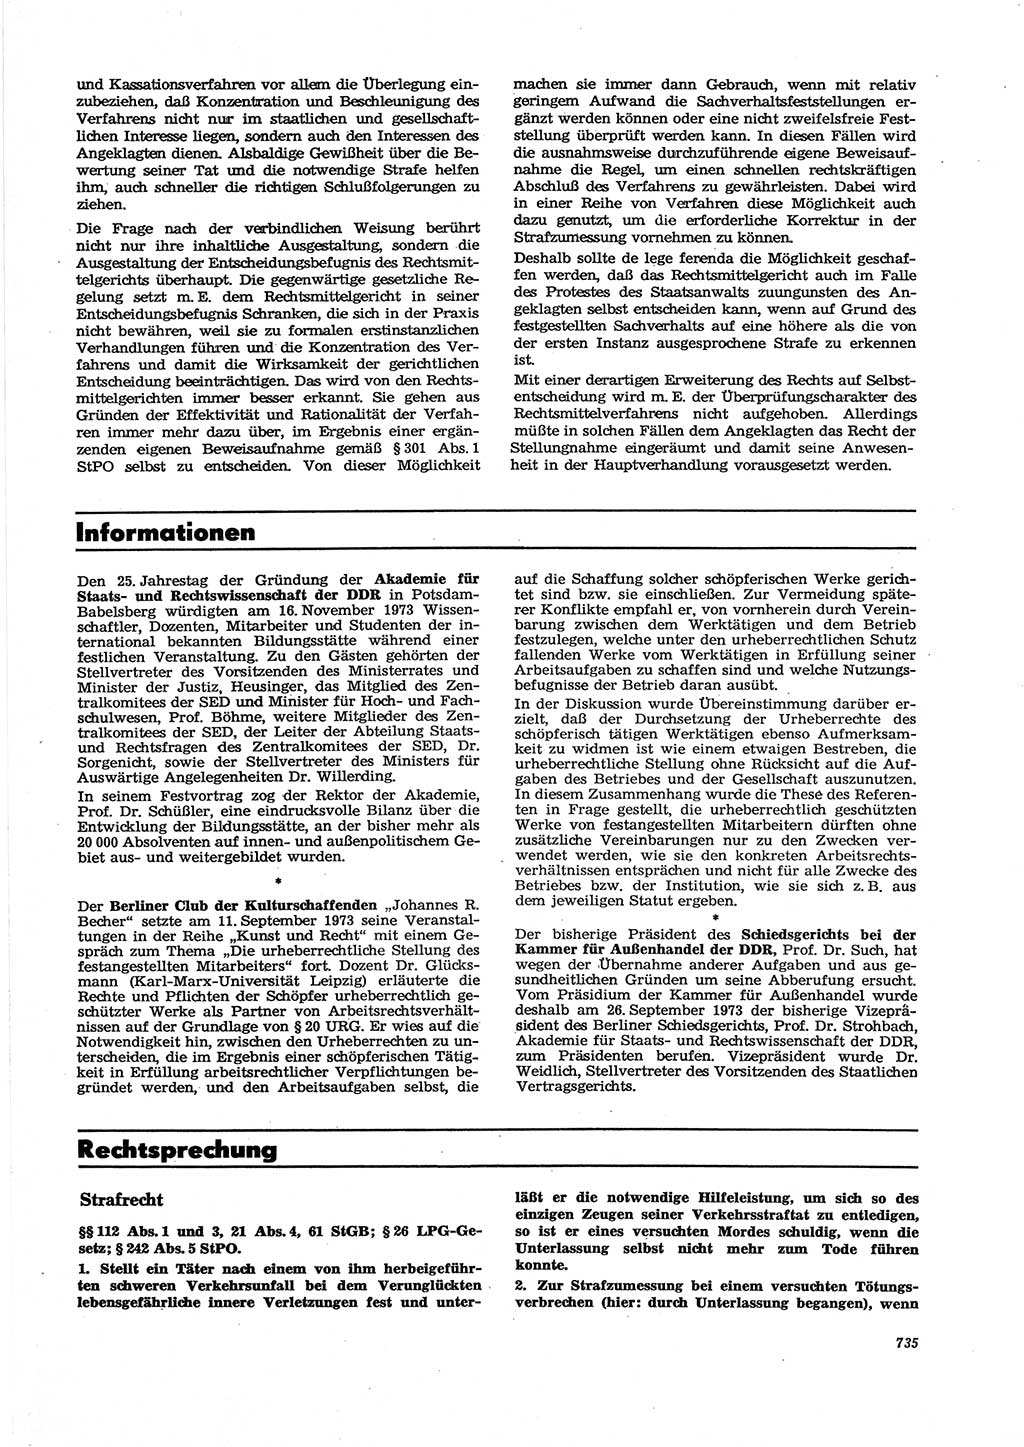 Neue Justiz (NJ), Zeitschrift für Recht und Rechtswissenschaft [Deutsche Demokratische Republik (DDR)], 27. Jahrgang 1973, Seite 735 (NJ DDR 1973, S. 735)